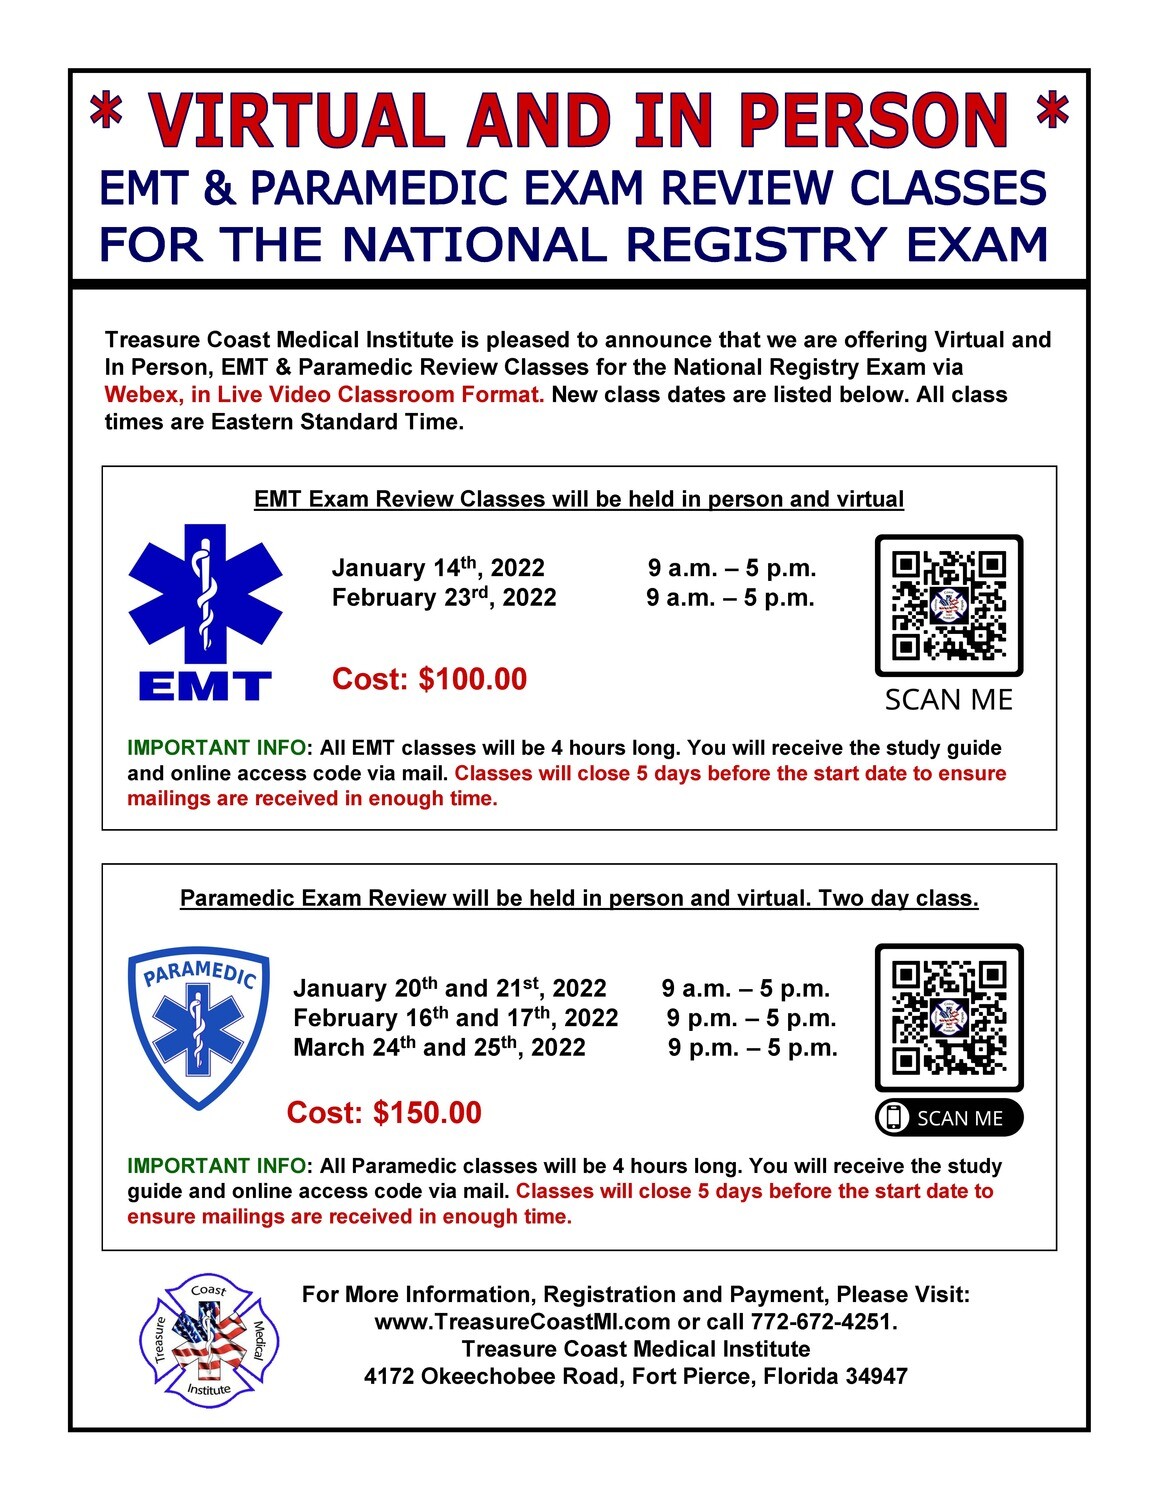 EMT Exam Review February 23rd
(VIRTUAL VIA WEBEX 9-5pm)